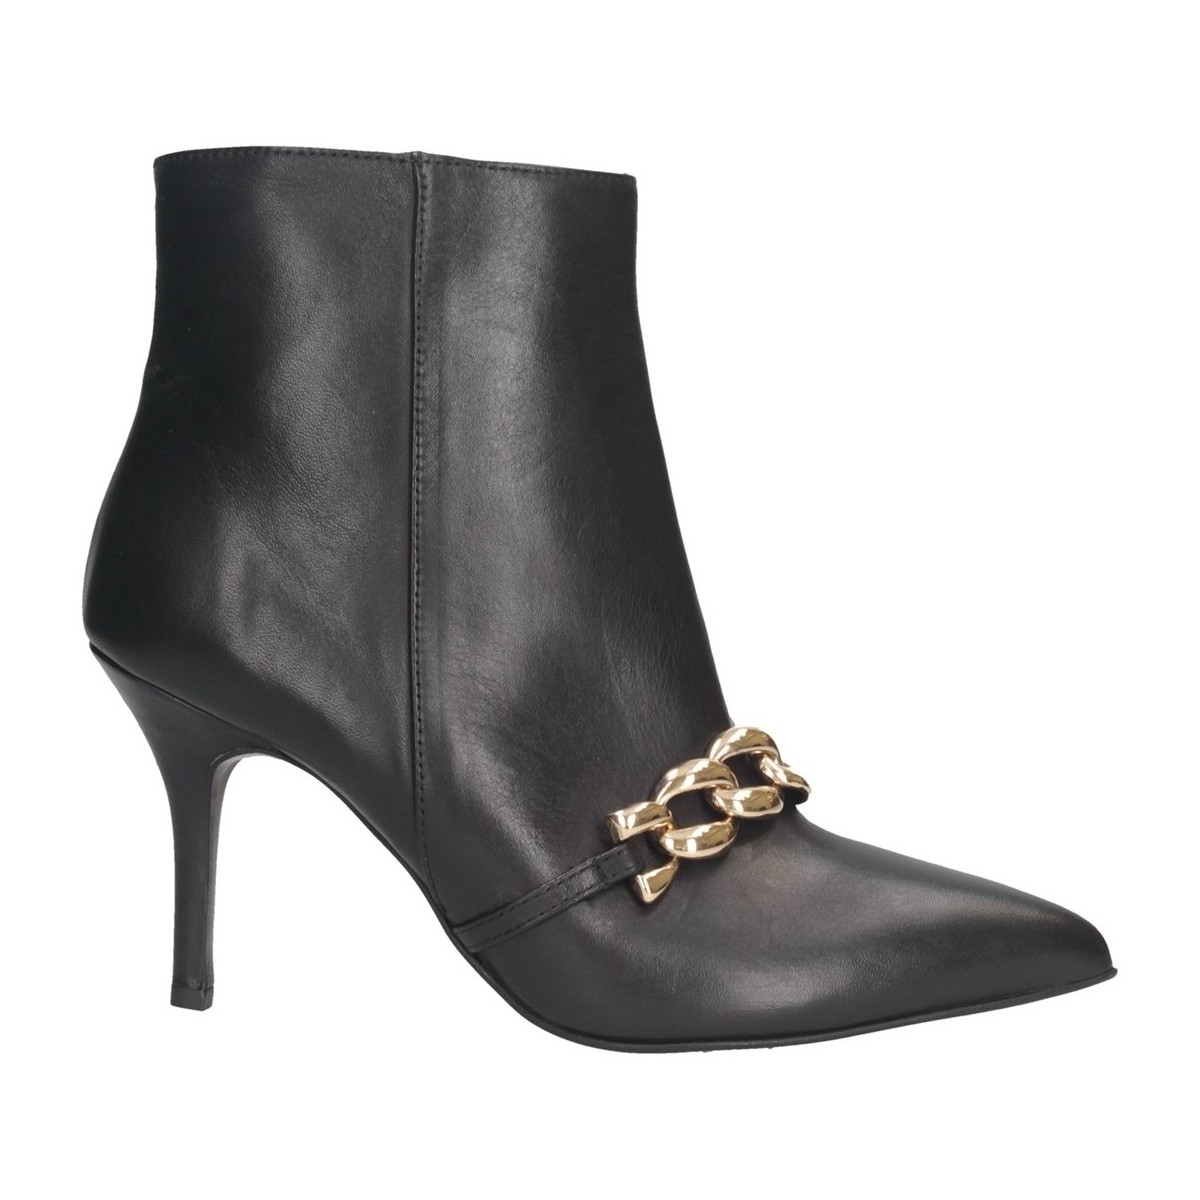 Chaussures Femme Knee High Boots ZEROC Sestriere Gtx M GORE-TEX 100570202 Black Black 602 PARIS 6-1 Bottes et bottines Femme NOIR Noir